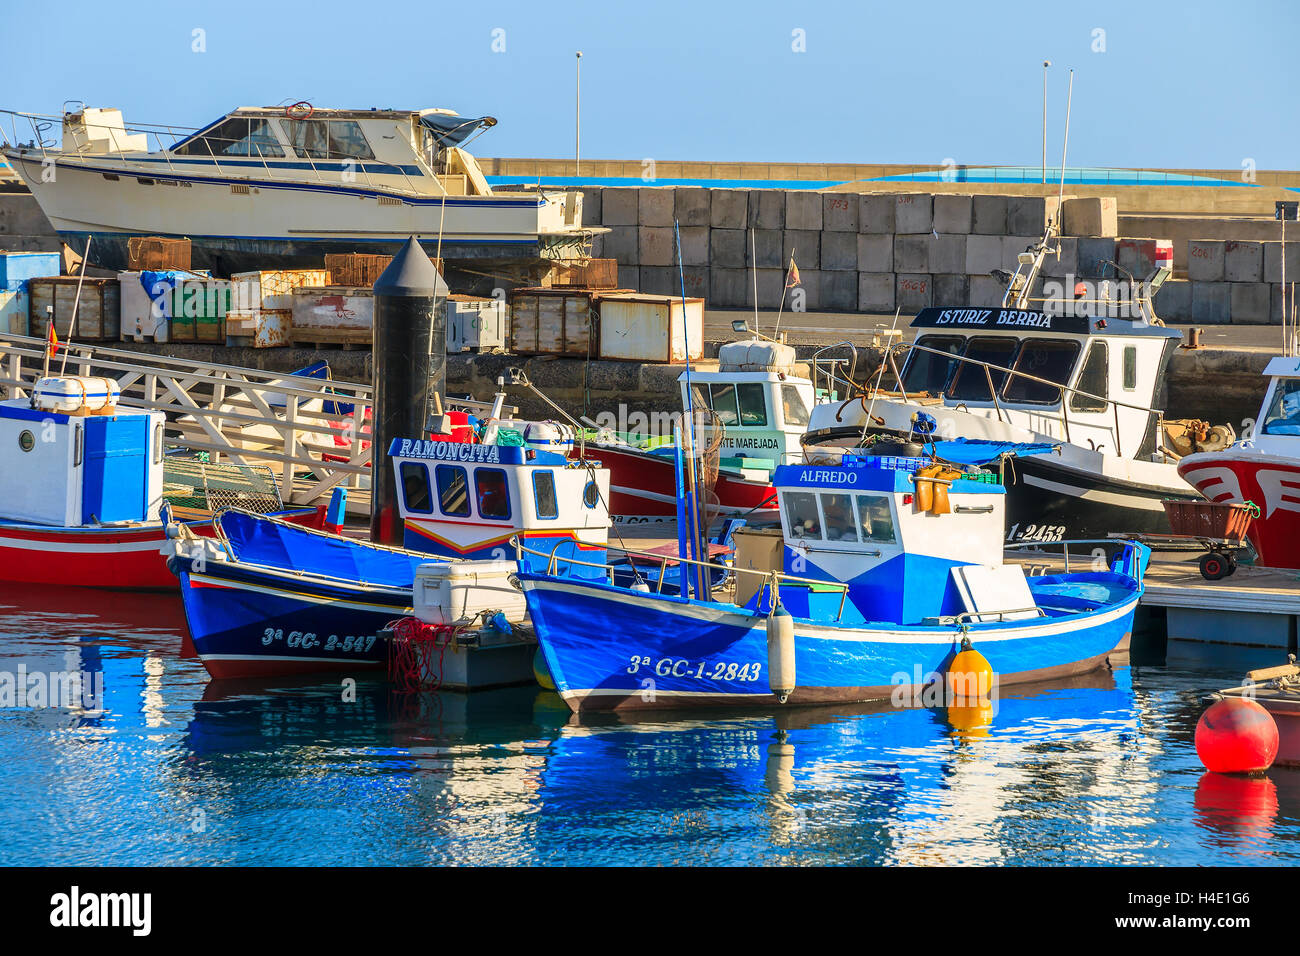 GRAN TARAJAL Hafen, Insel FUERTEVENTURA - 4. Februar 2014: Angelboote/Fischerboote im Hafen von Gran Tarajal Stadt, Insel Fuerteventura, Spanien. Kanarischen Inseln sind ein beliebtes Touristenziel. Stockfoto